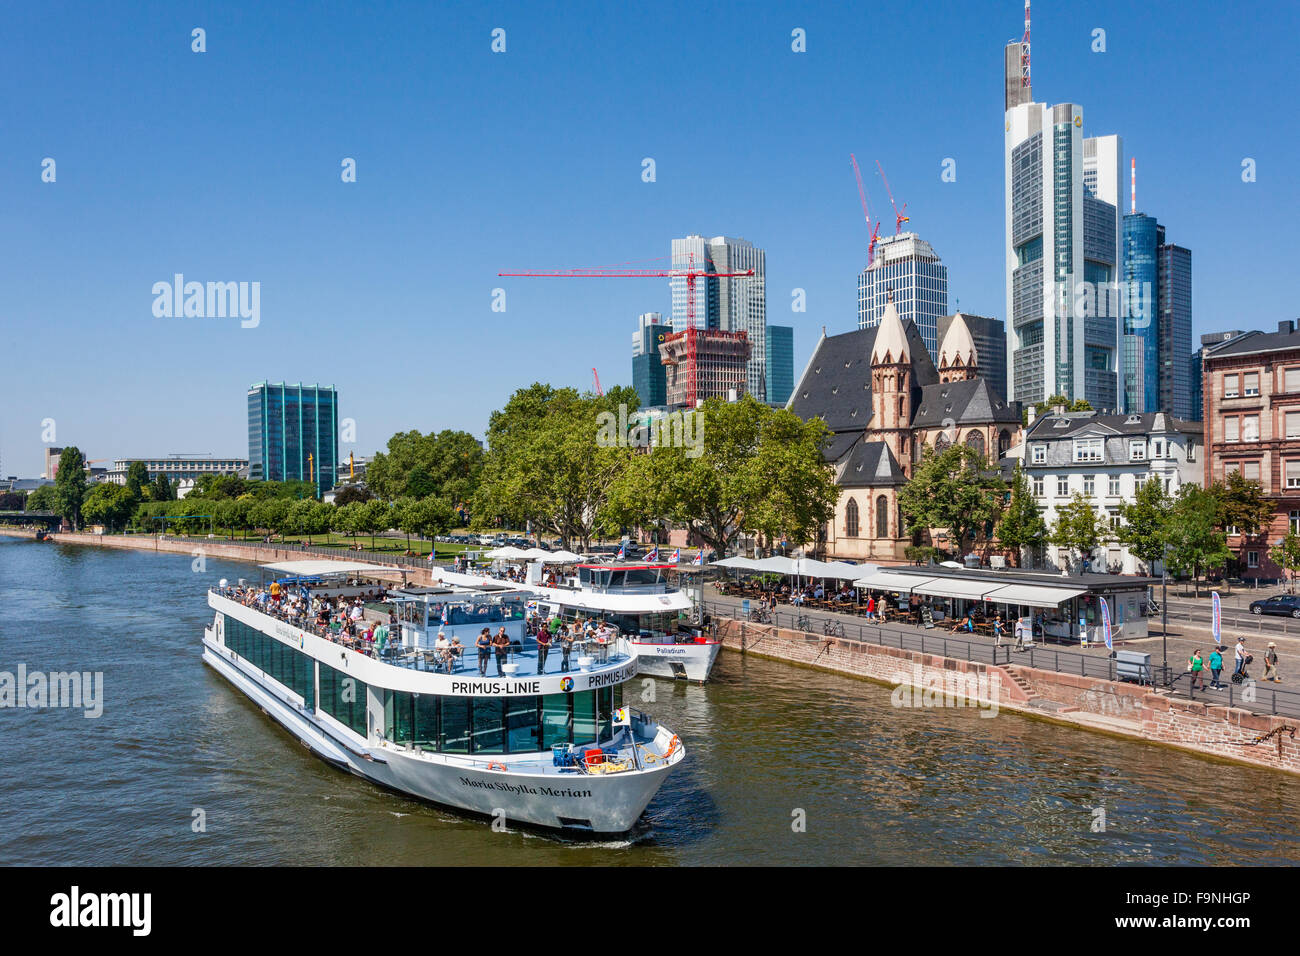 Alemania, Hesse, Frankfurt am Main, río Primus-Linie crucero 'Maria Sibylla Merian' partiendo desde las orillas del río Mainkai Foto de stock